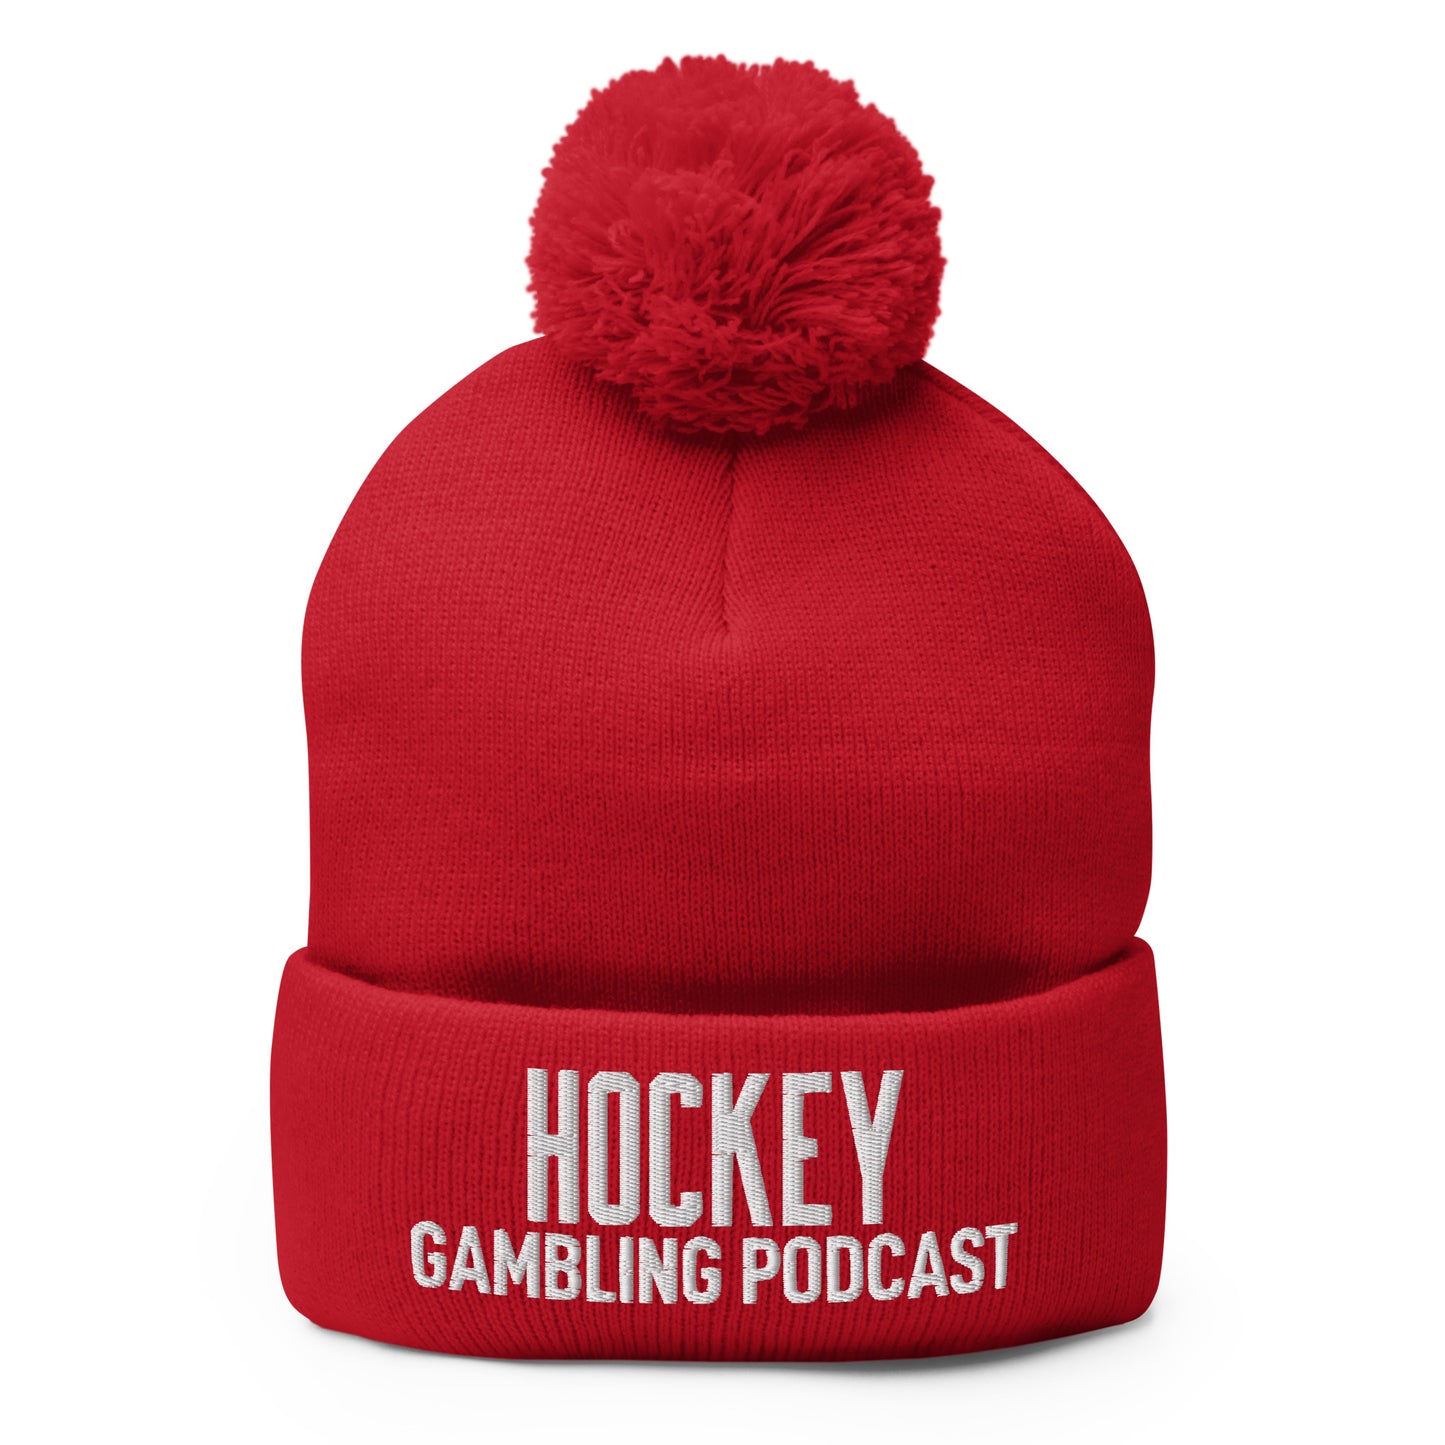 Hockey Gambling Podcast - Pom-Pom Beanie (White Logo)